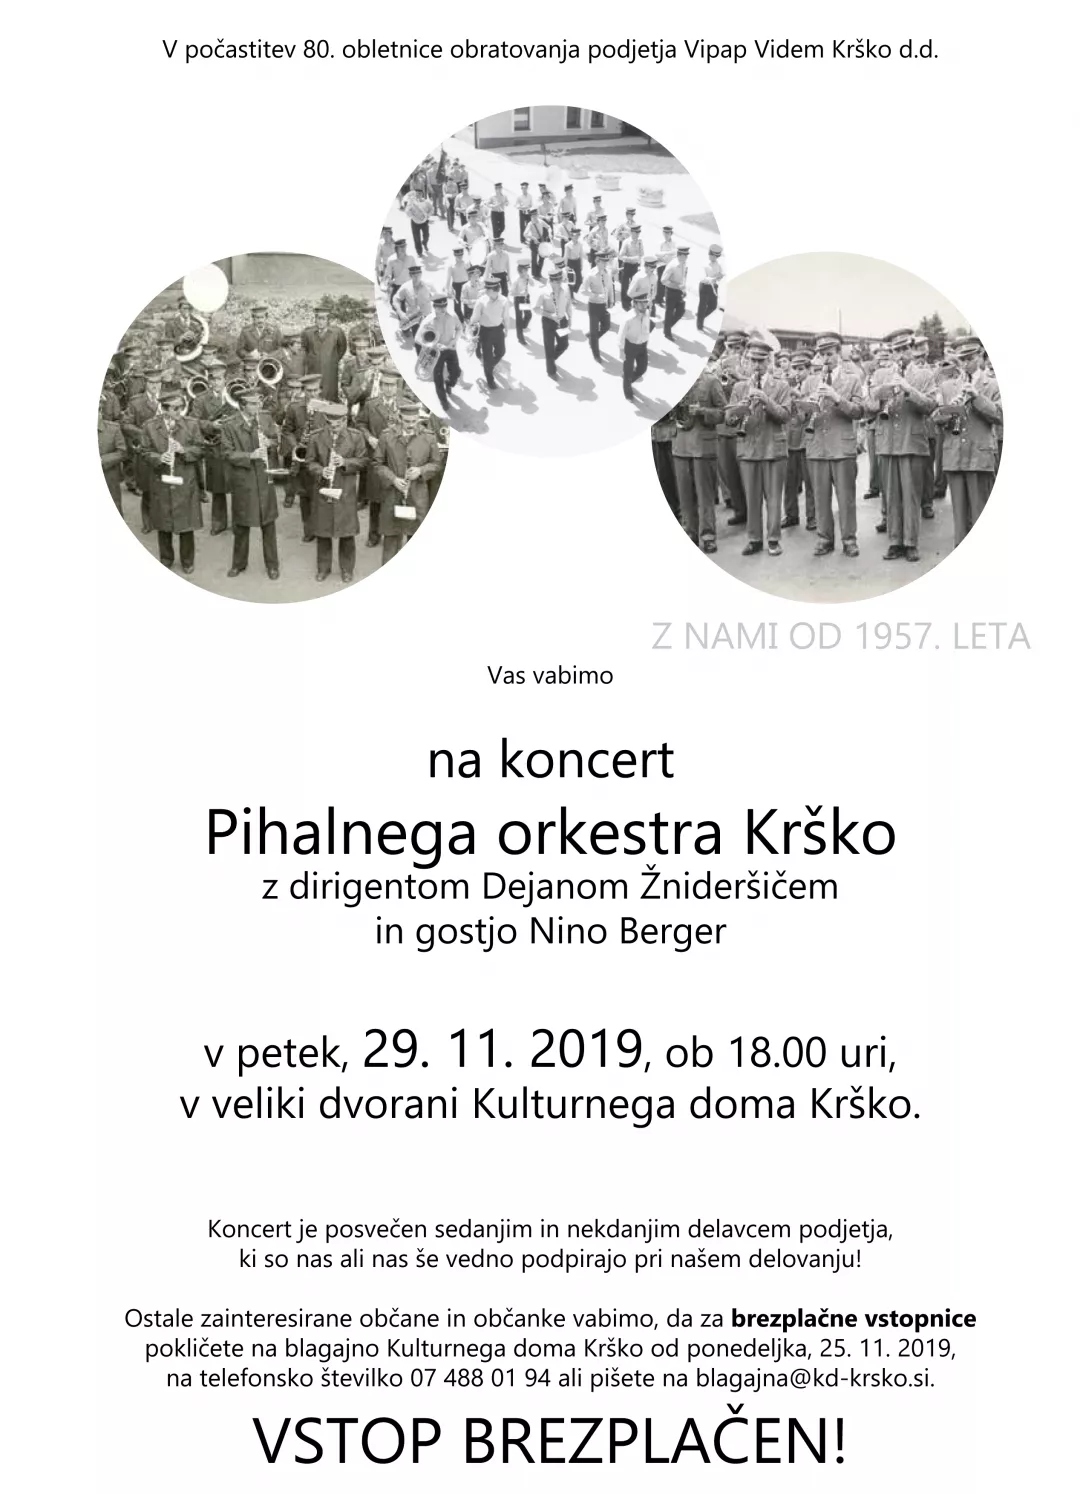 80 let Vipap Videm Krško - koncert Pihalnega orkestra Krško